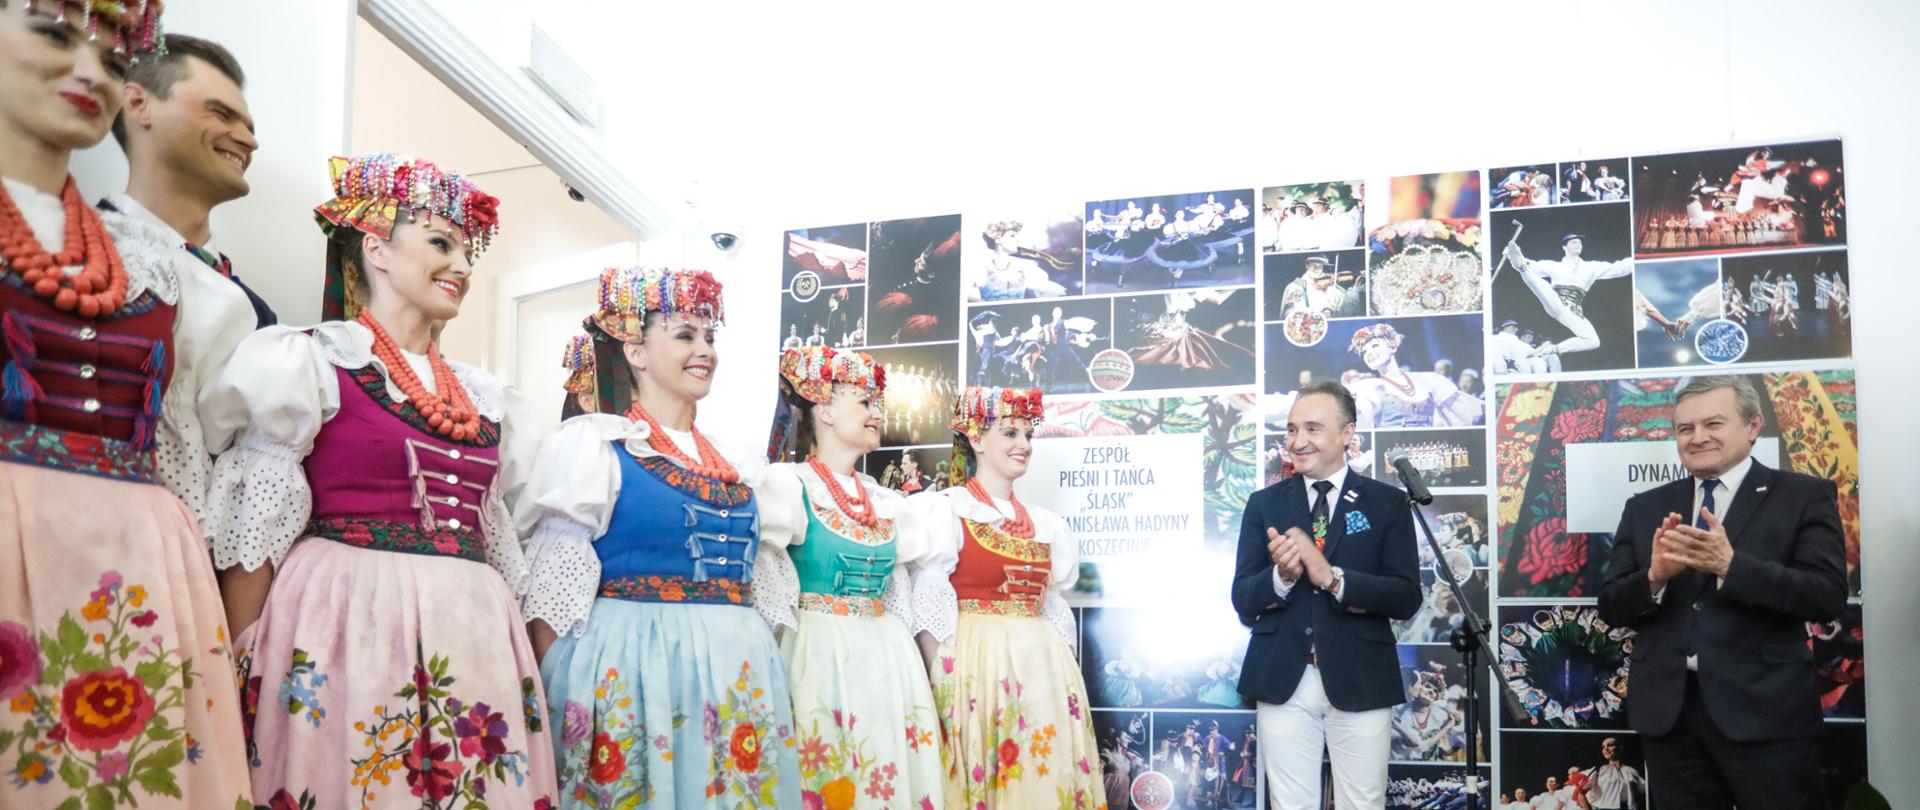 W siedzibie MKiDN prezentujemy wystawę Zespołu Pieśni i Tańca „Śląsk” fot. Danuta Matloch